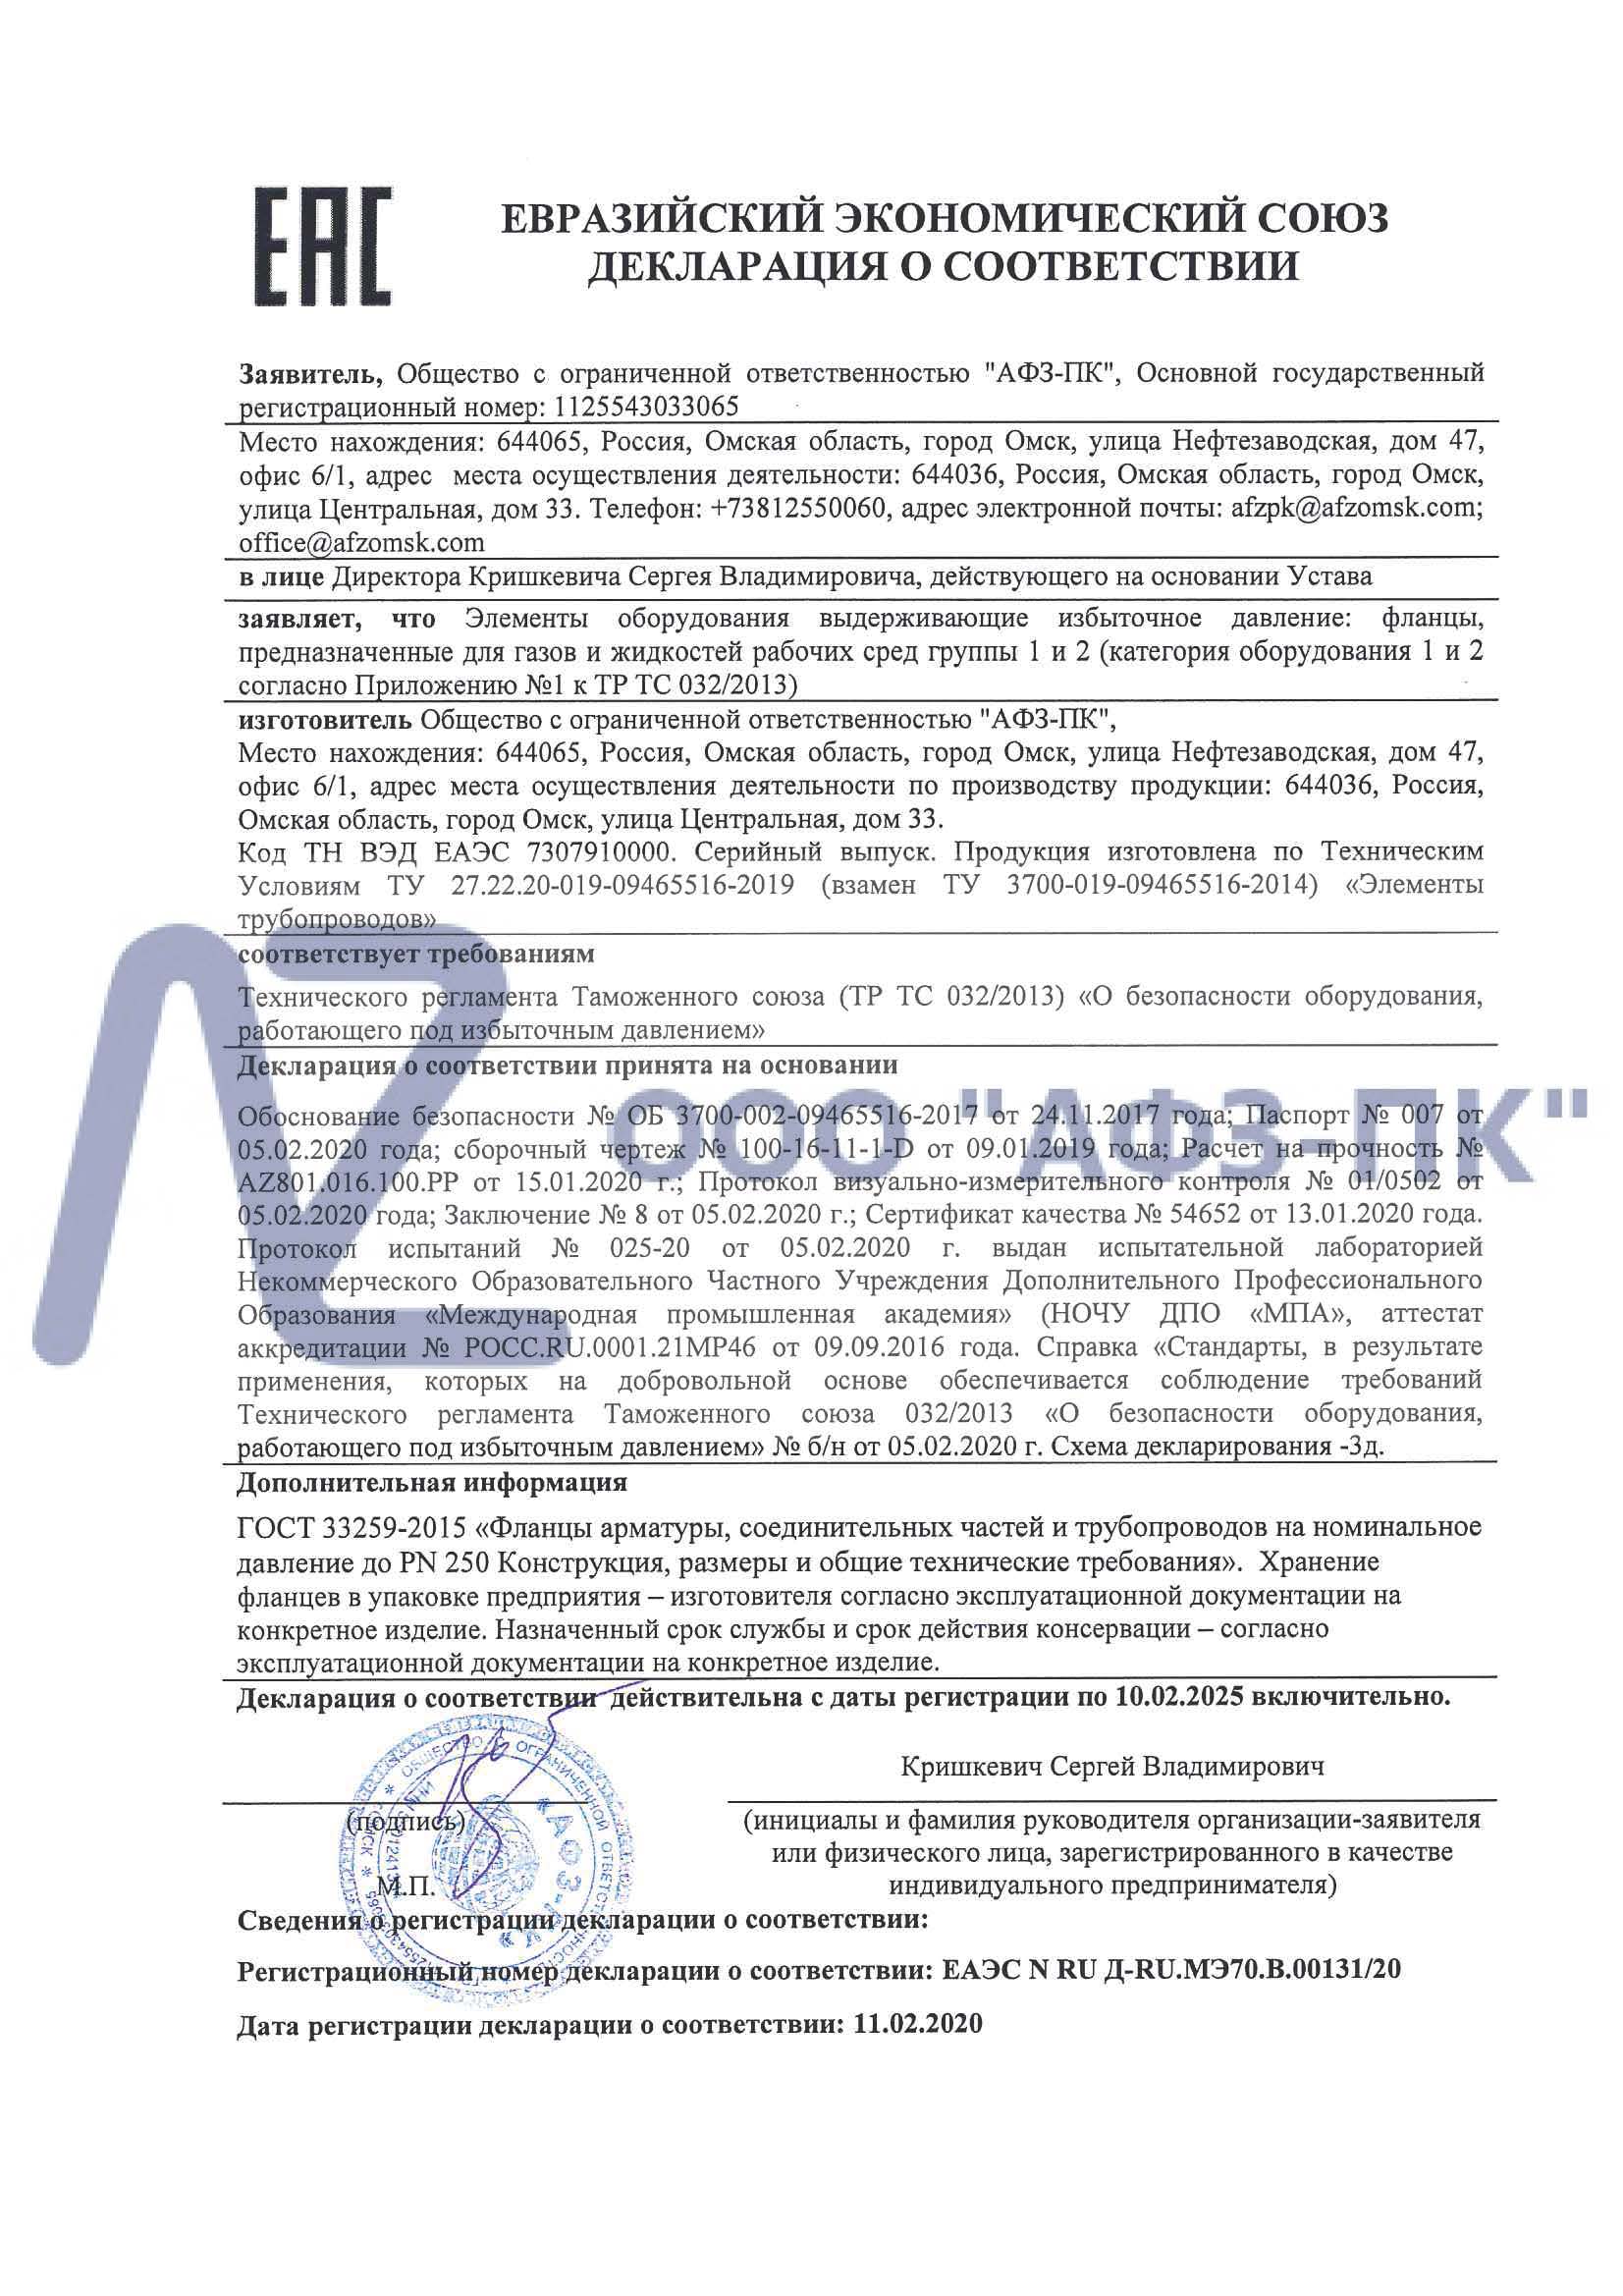 Завод «АФЗ-ПК» получил декларацию соответствия ТР ТС 032/2013 на фланцы